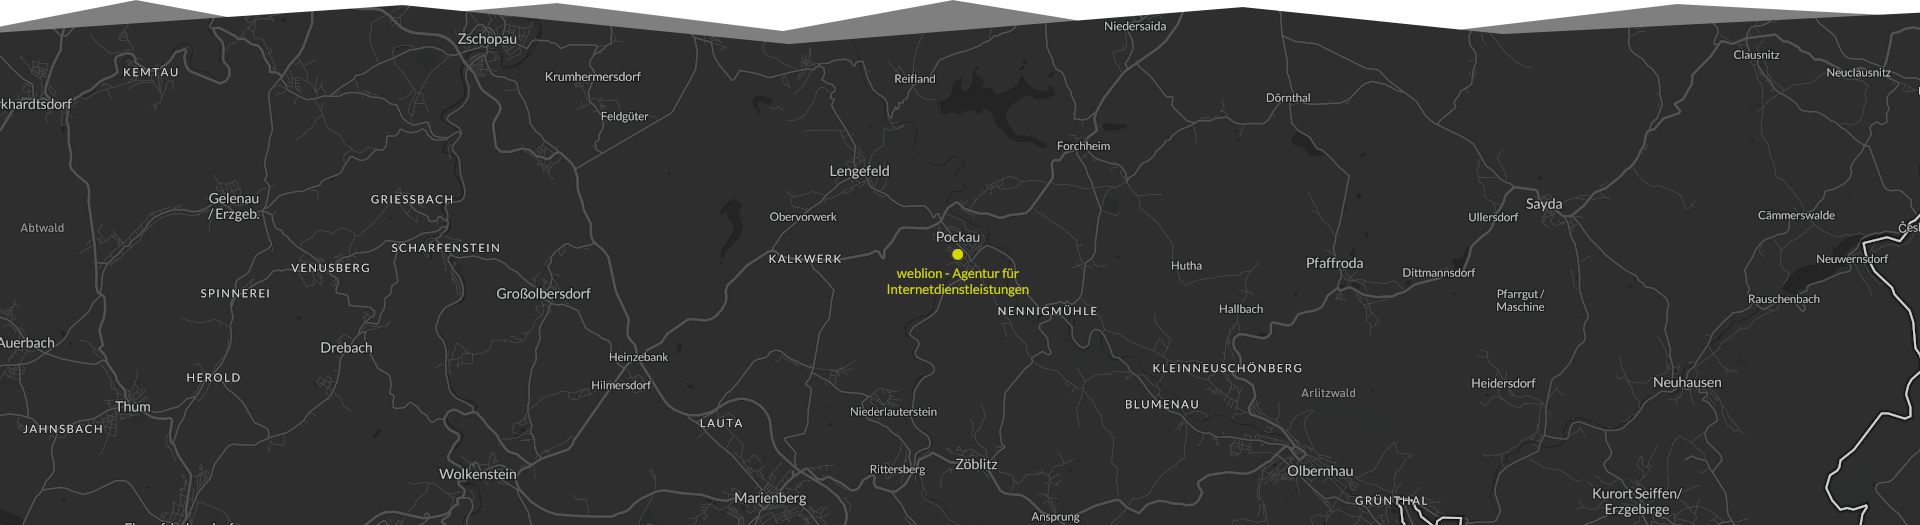 Karte vom Erzgebirge mit Markierung von weblion in Pockau-Lengefeld